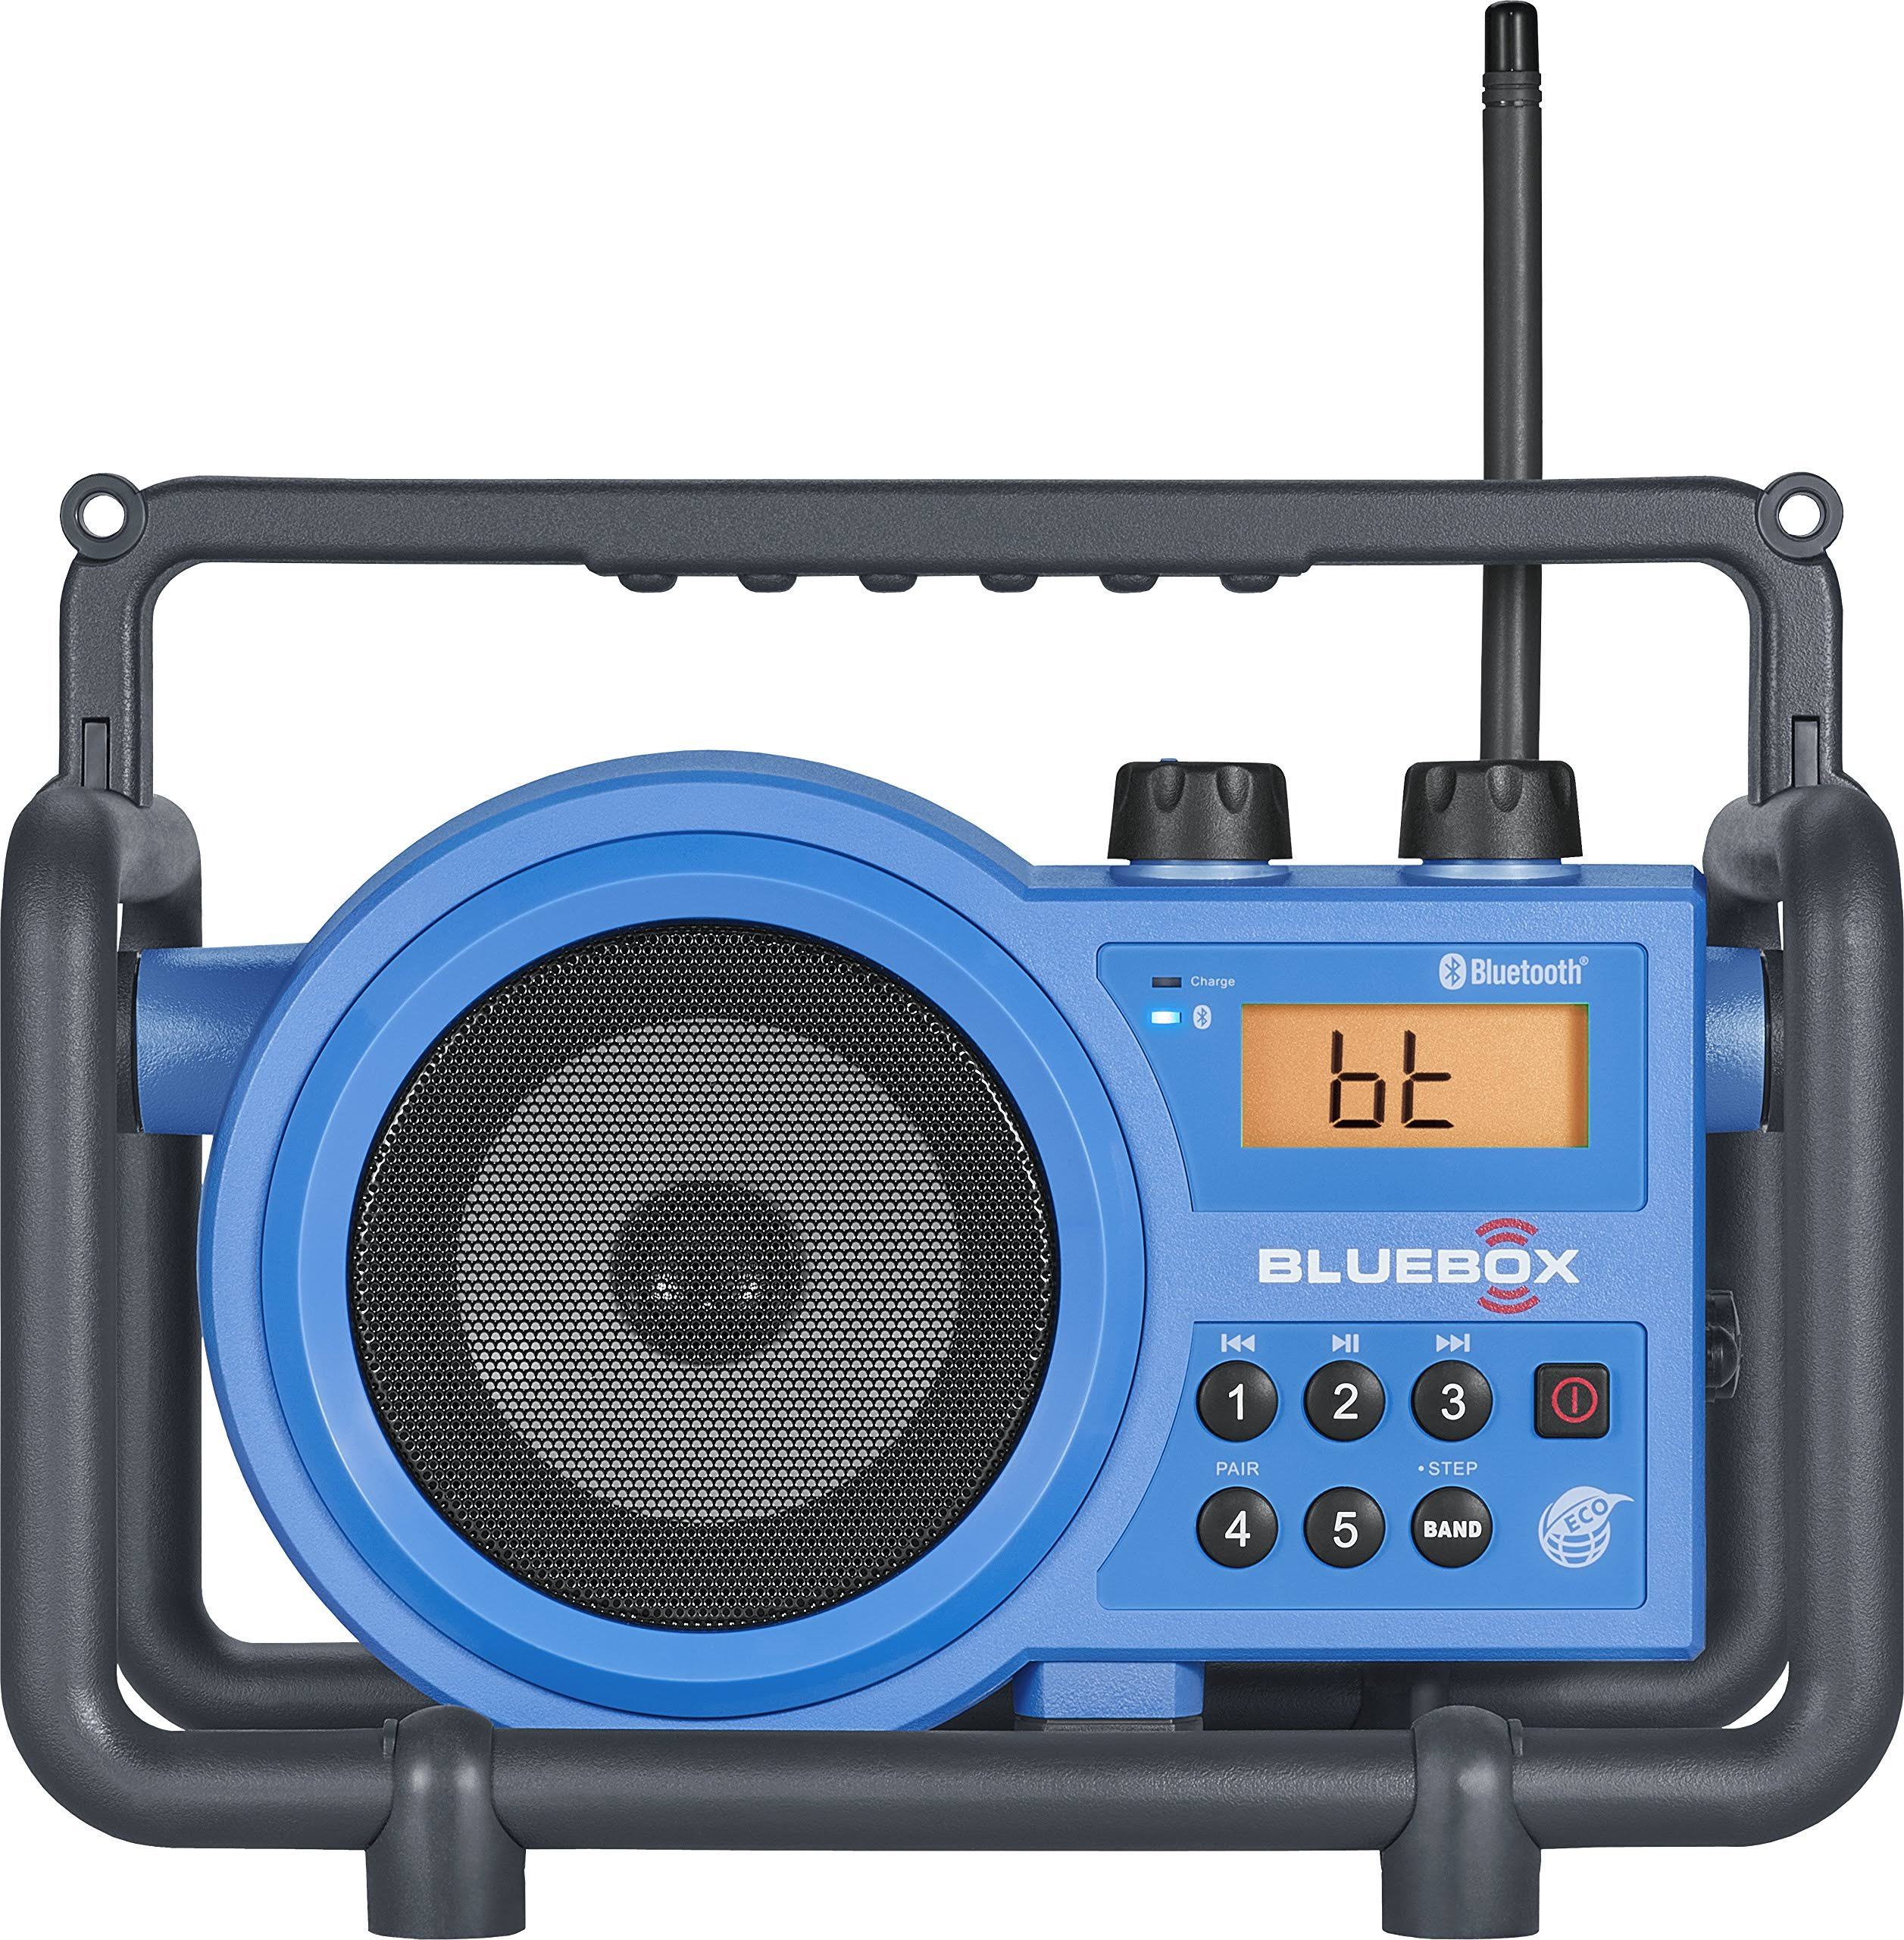 Sangean BB-100 Bluebox AM/FM Ultra-Rugged Digital Receiver with Bluetooth, Blue, 12.4"